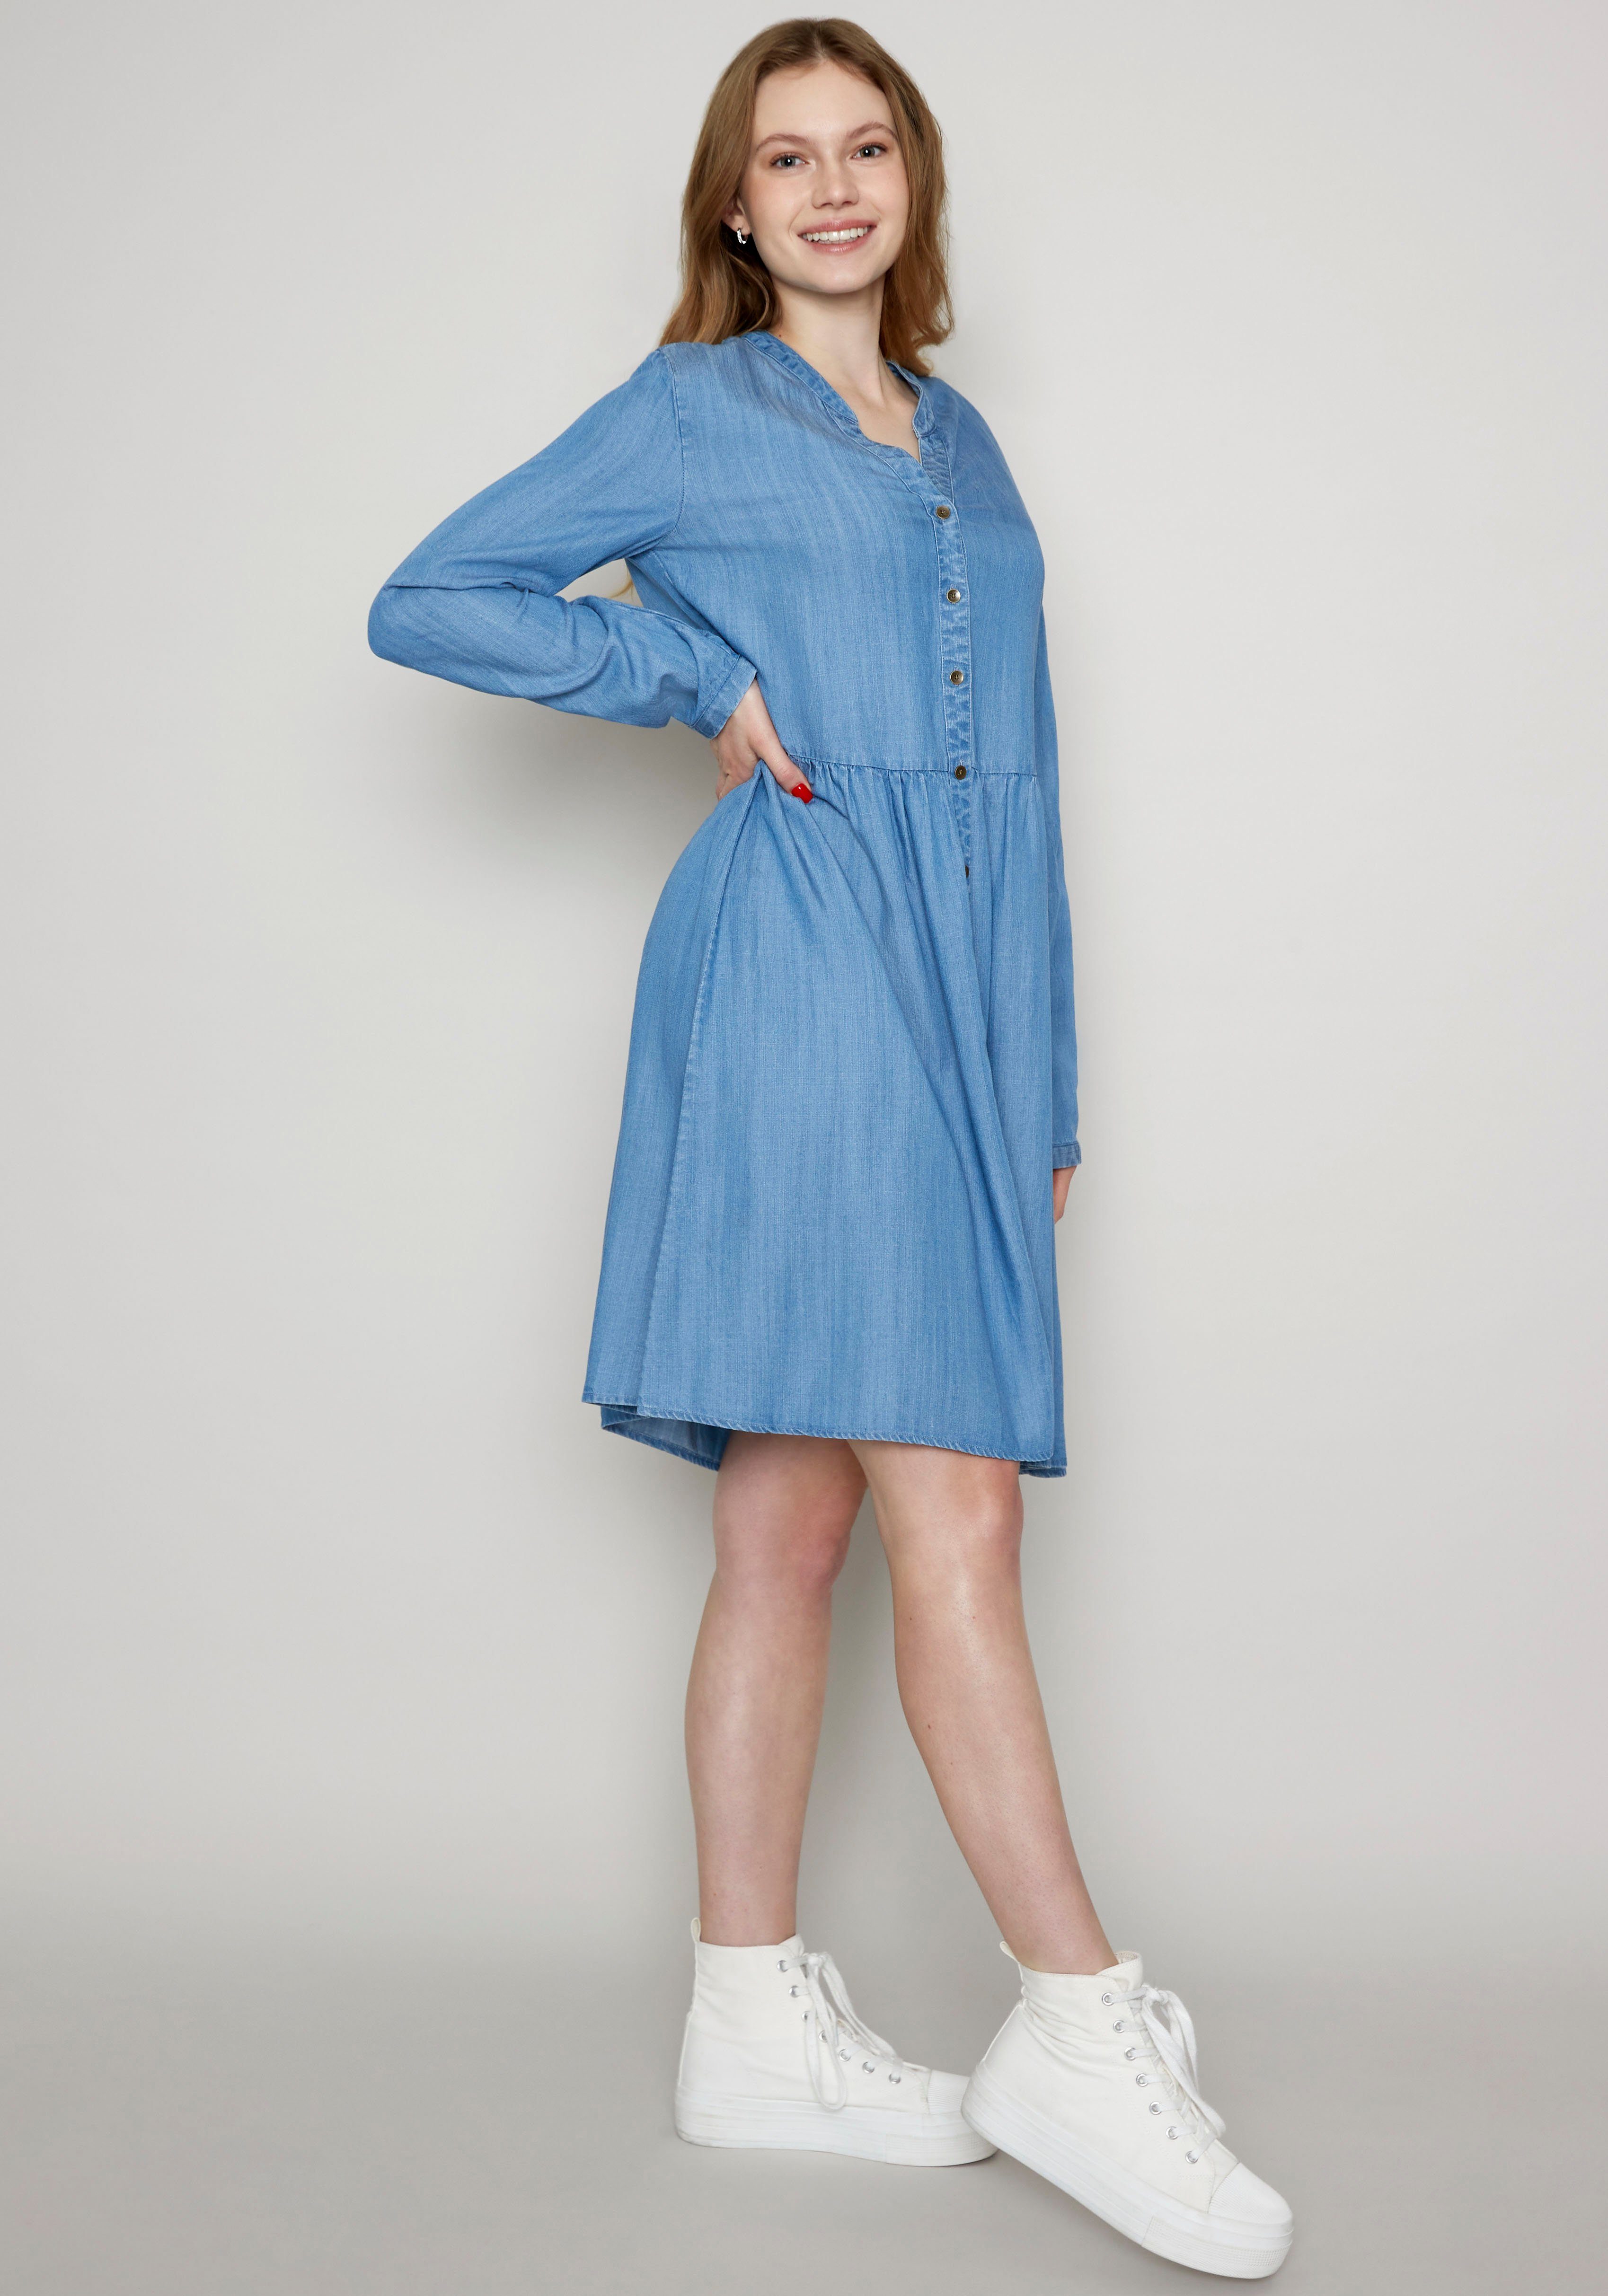 ZABAIONE Jeanskleid Dress Me44lika, Sommerkleid von Zabaione in bester  Marken-Qualität